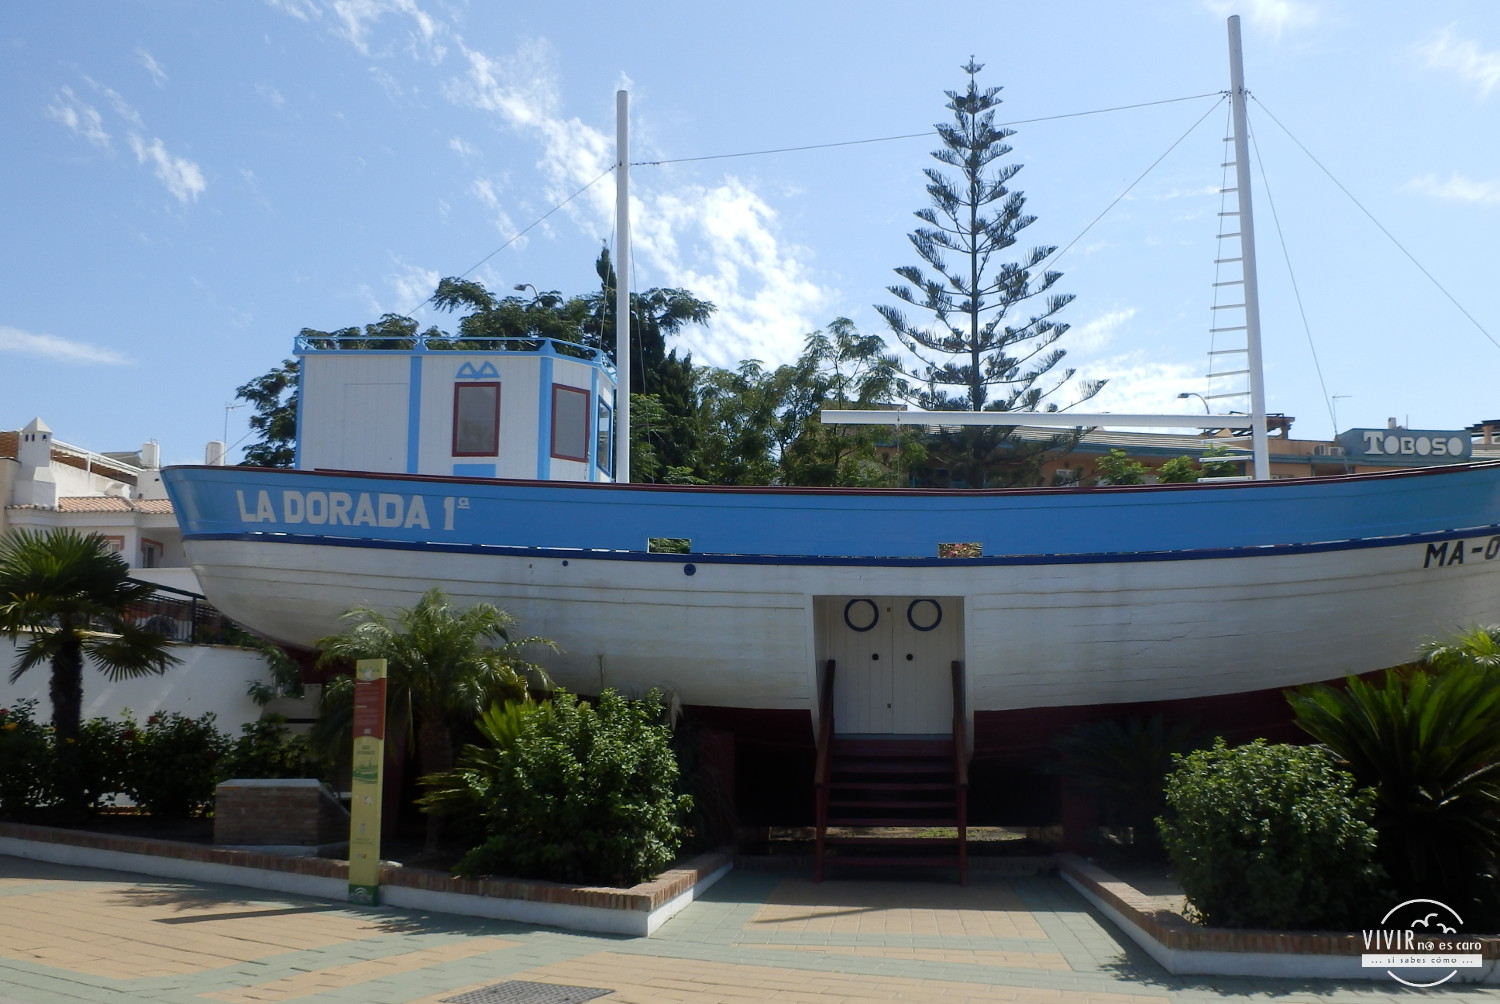 La Dorada - Barco de Chanquete en Nerja (Málaga)